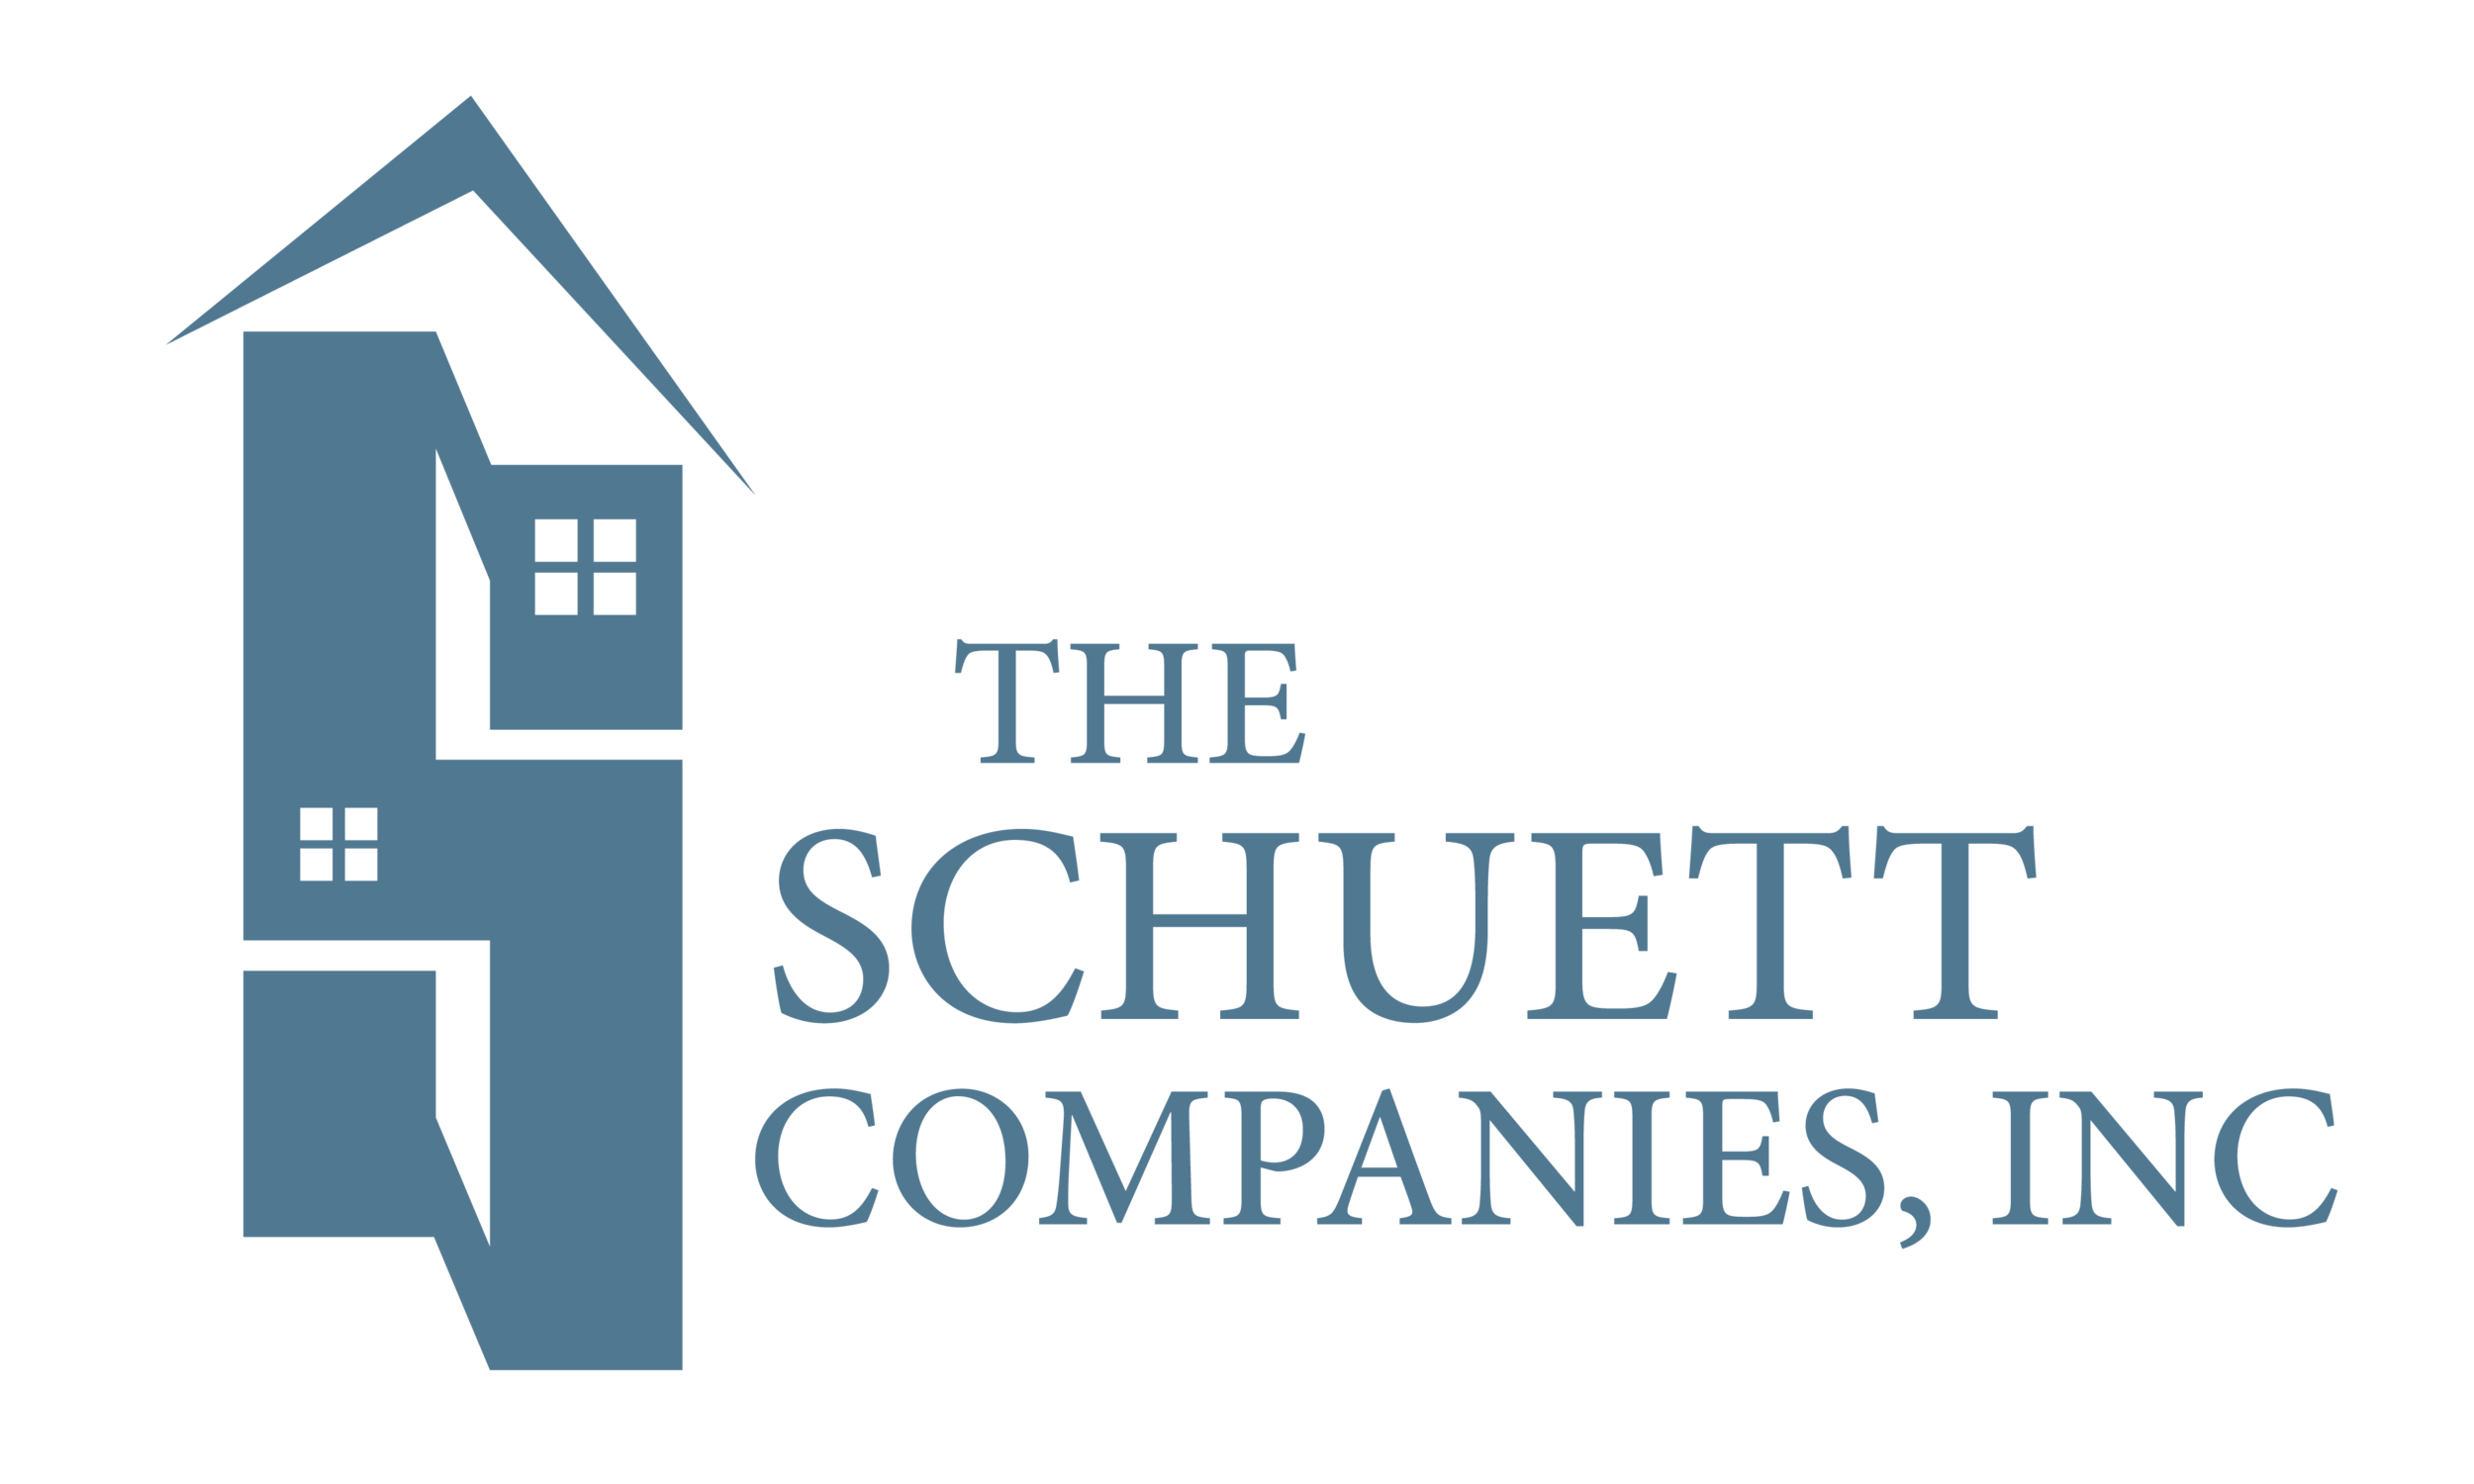 The Schuett Companies, Inc. 